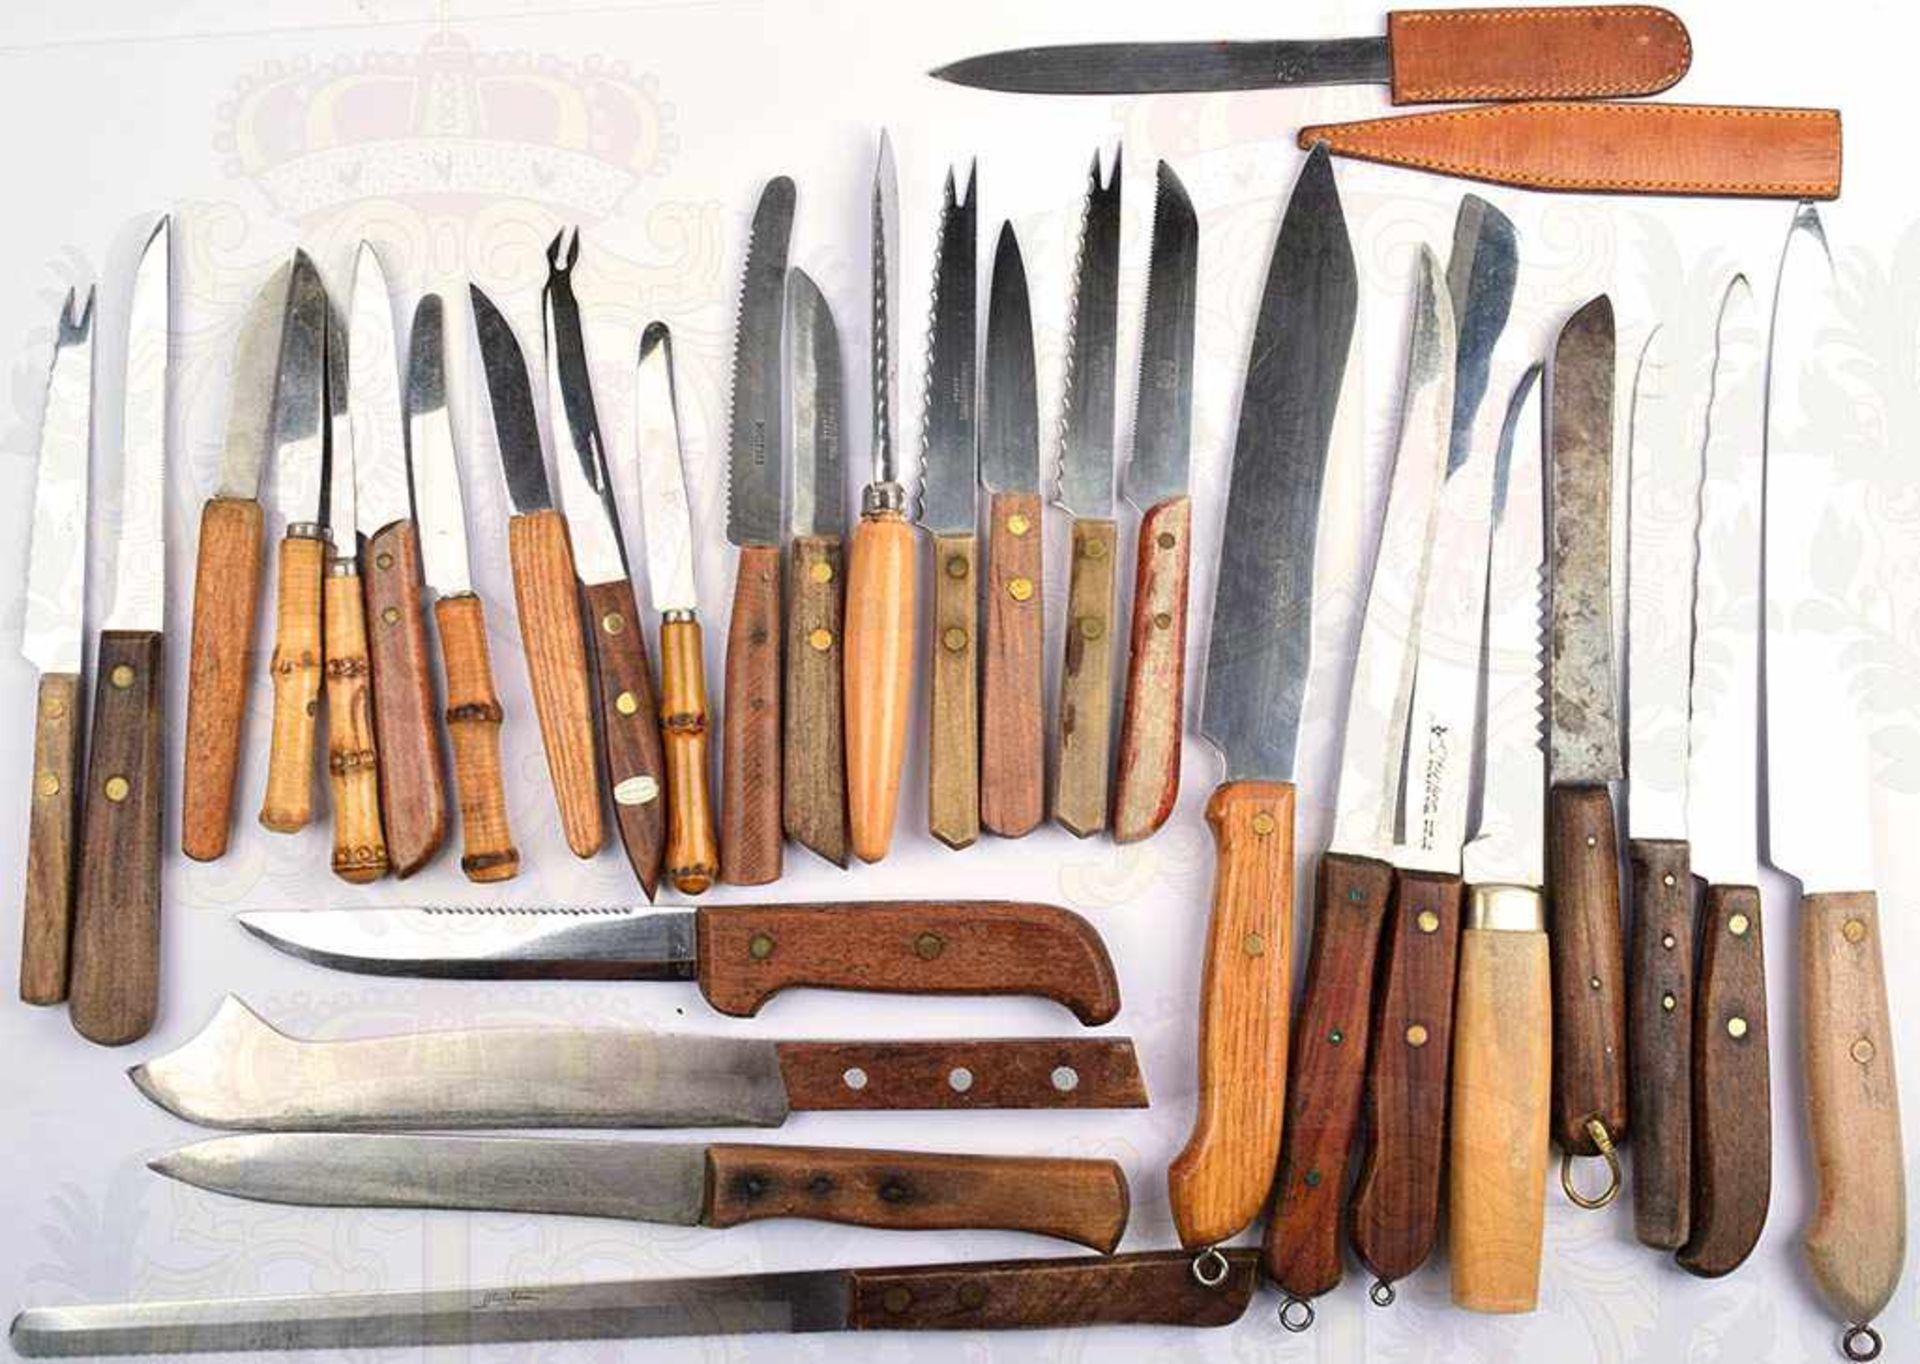 KONVOLUT MESSER, 30 Stück, dabei Küchen-, Brot- , Käse- u. Obst-Messer, Klingen-L. 7-23 cm, Herst.